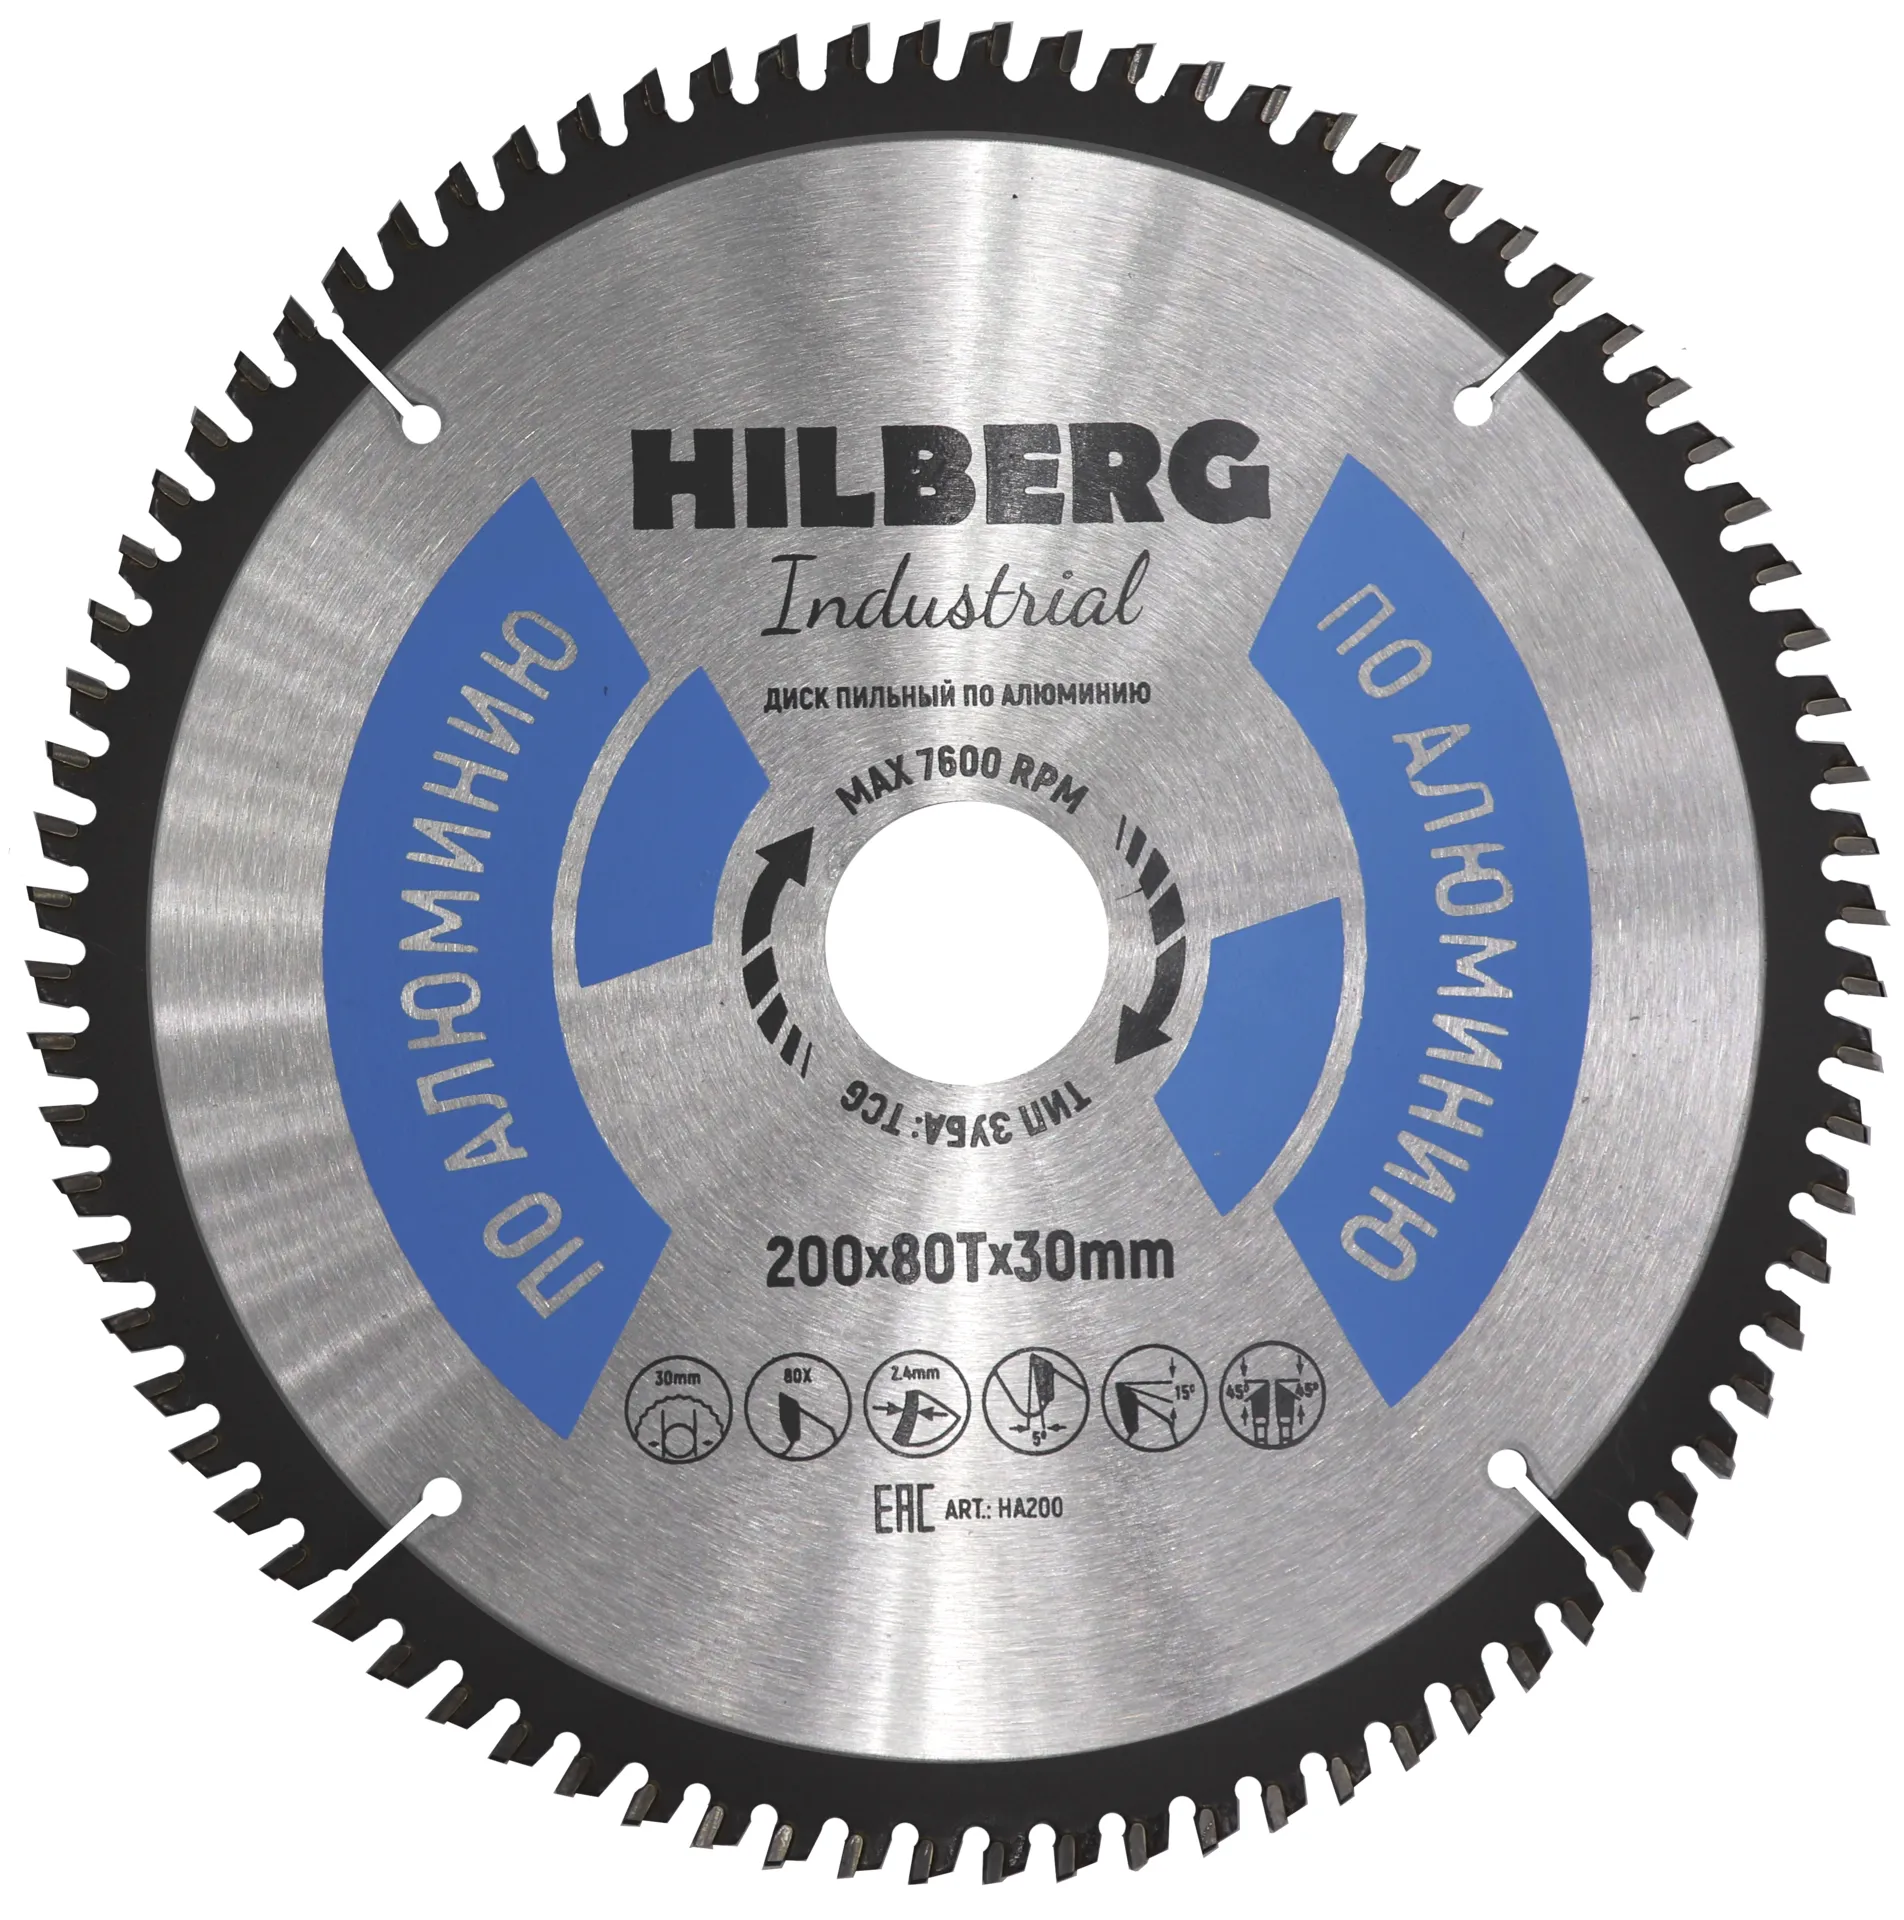 Диск пильный по алюминию 200х80Tx30мм Hilberg Industrial HA200